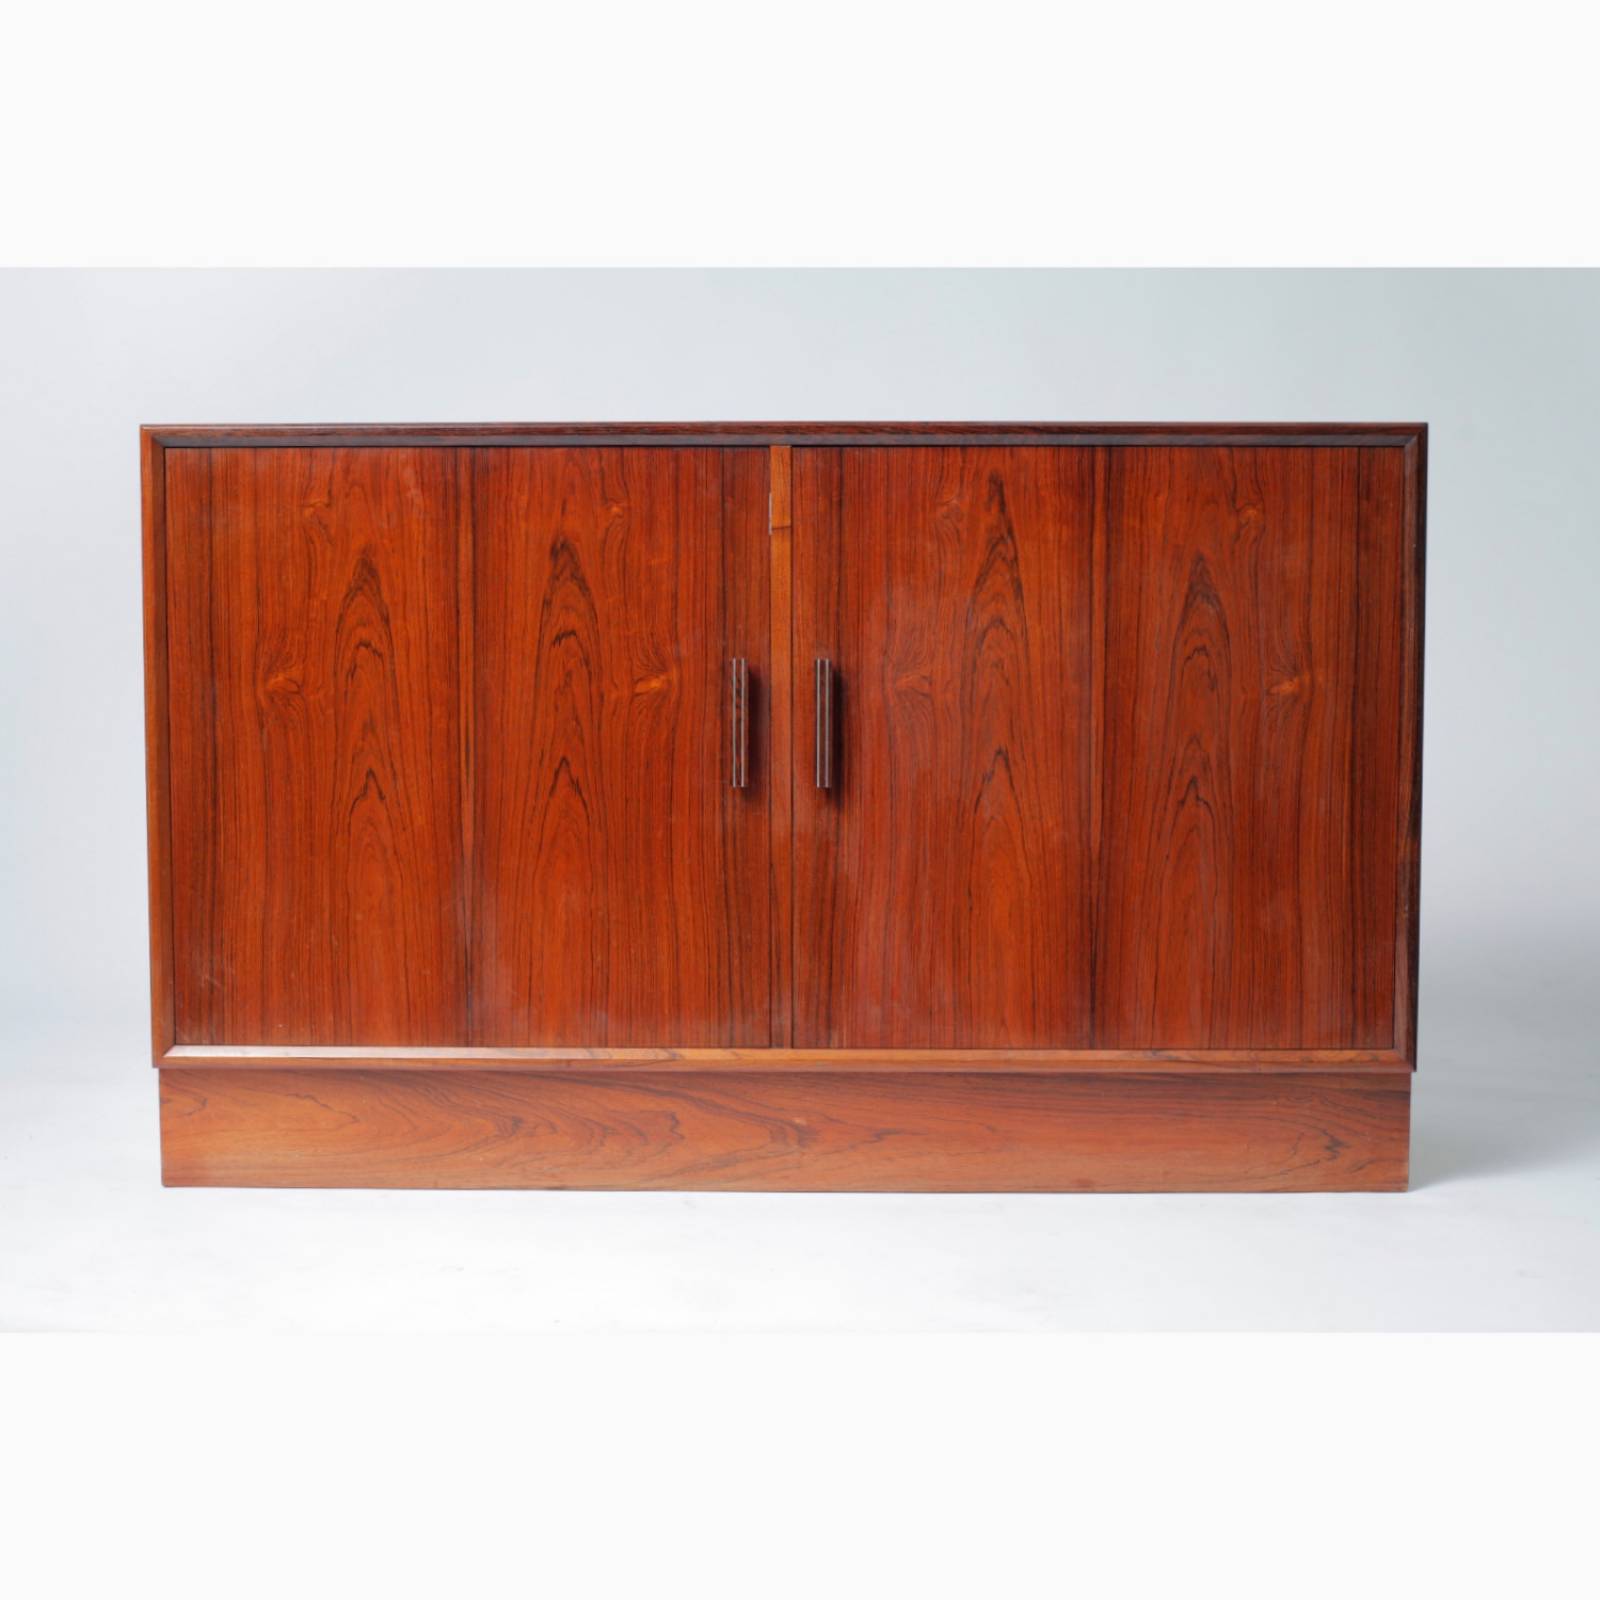 1970s Danish Rosewood Sideboard With Cupboard Doors